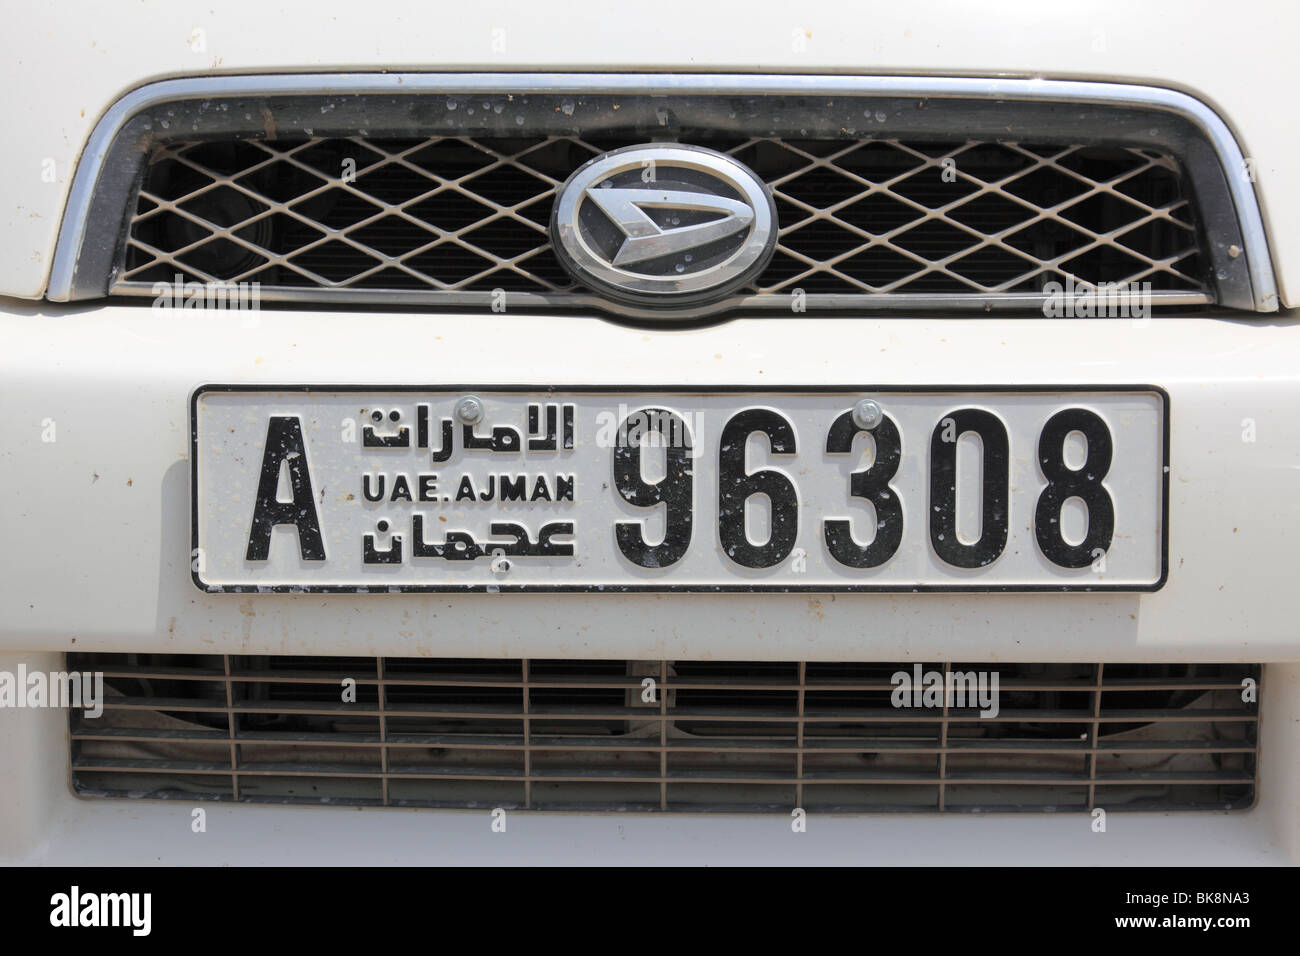 Qatar Arabisches KFZ Kennzeichen Nummernschild Schild Arabian Number Plate.